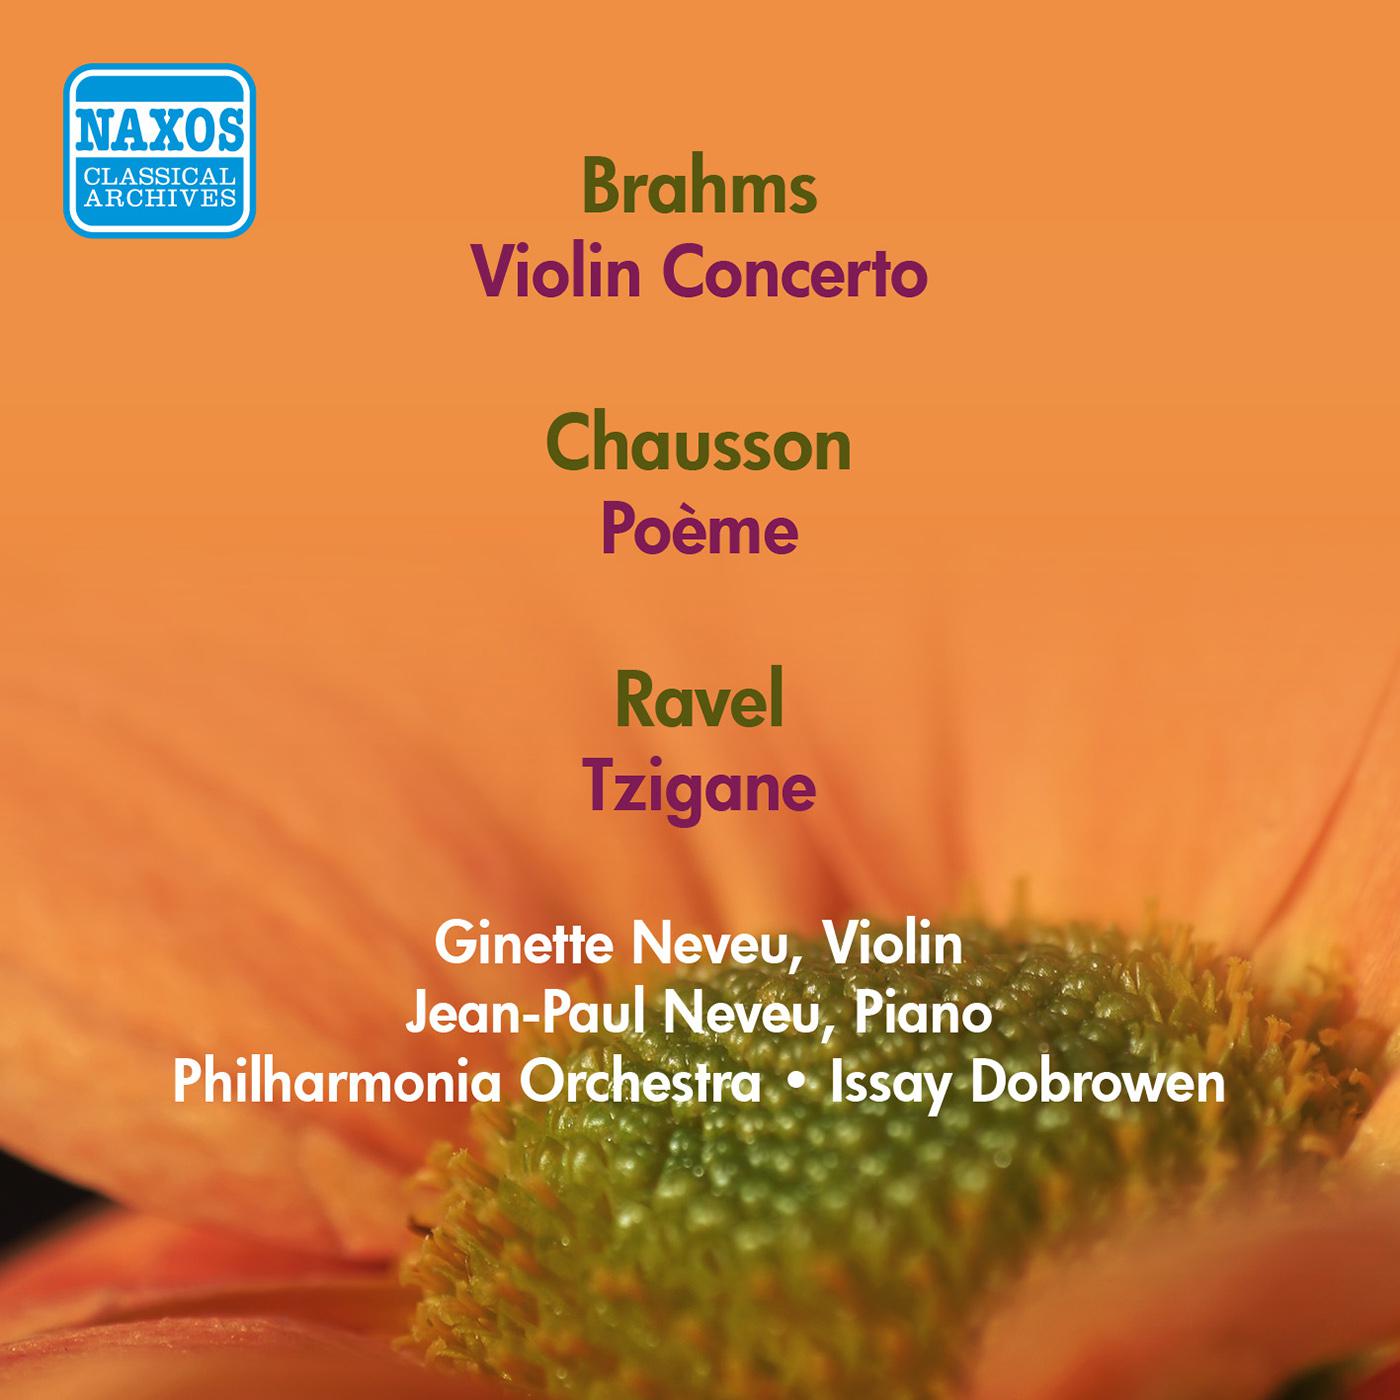 Violin Concerto in D Major, Op. 77:I. Allegro non troppo - Cadenza - Tempo I